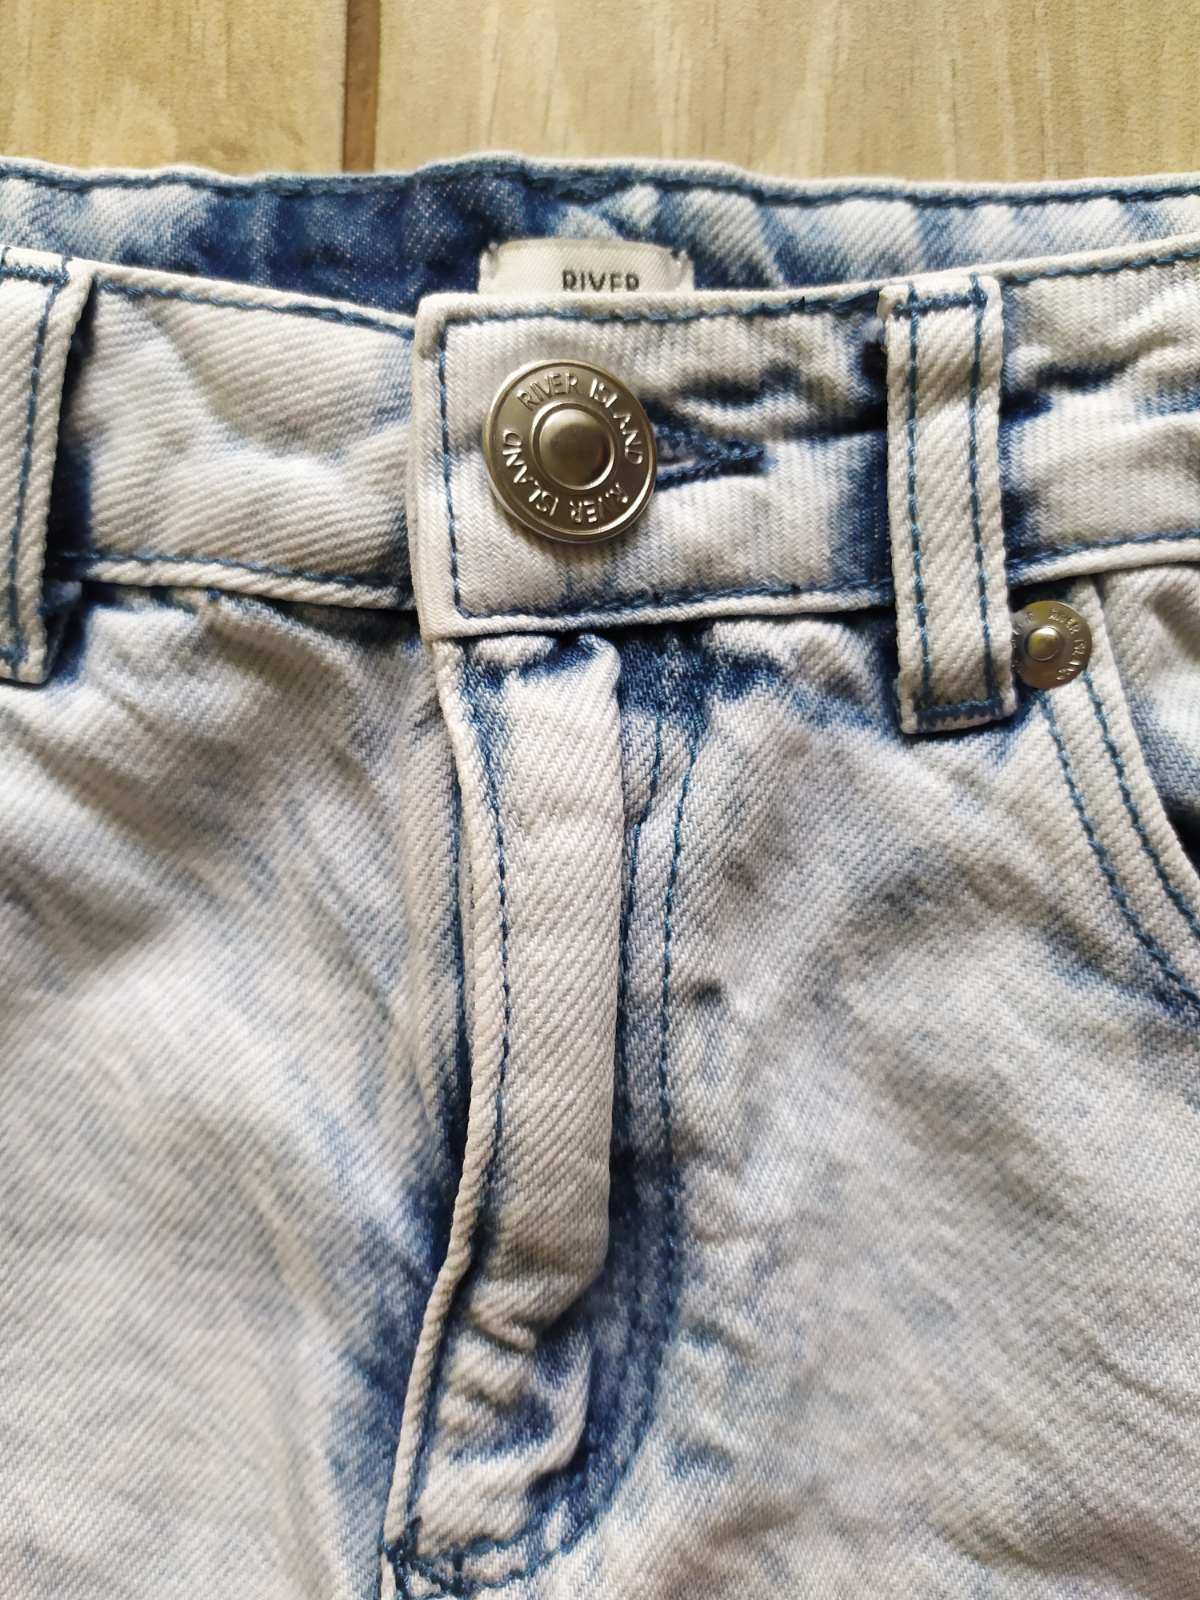 Джинсова спідниця, джинсова юбка, джинсовая юбка